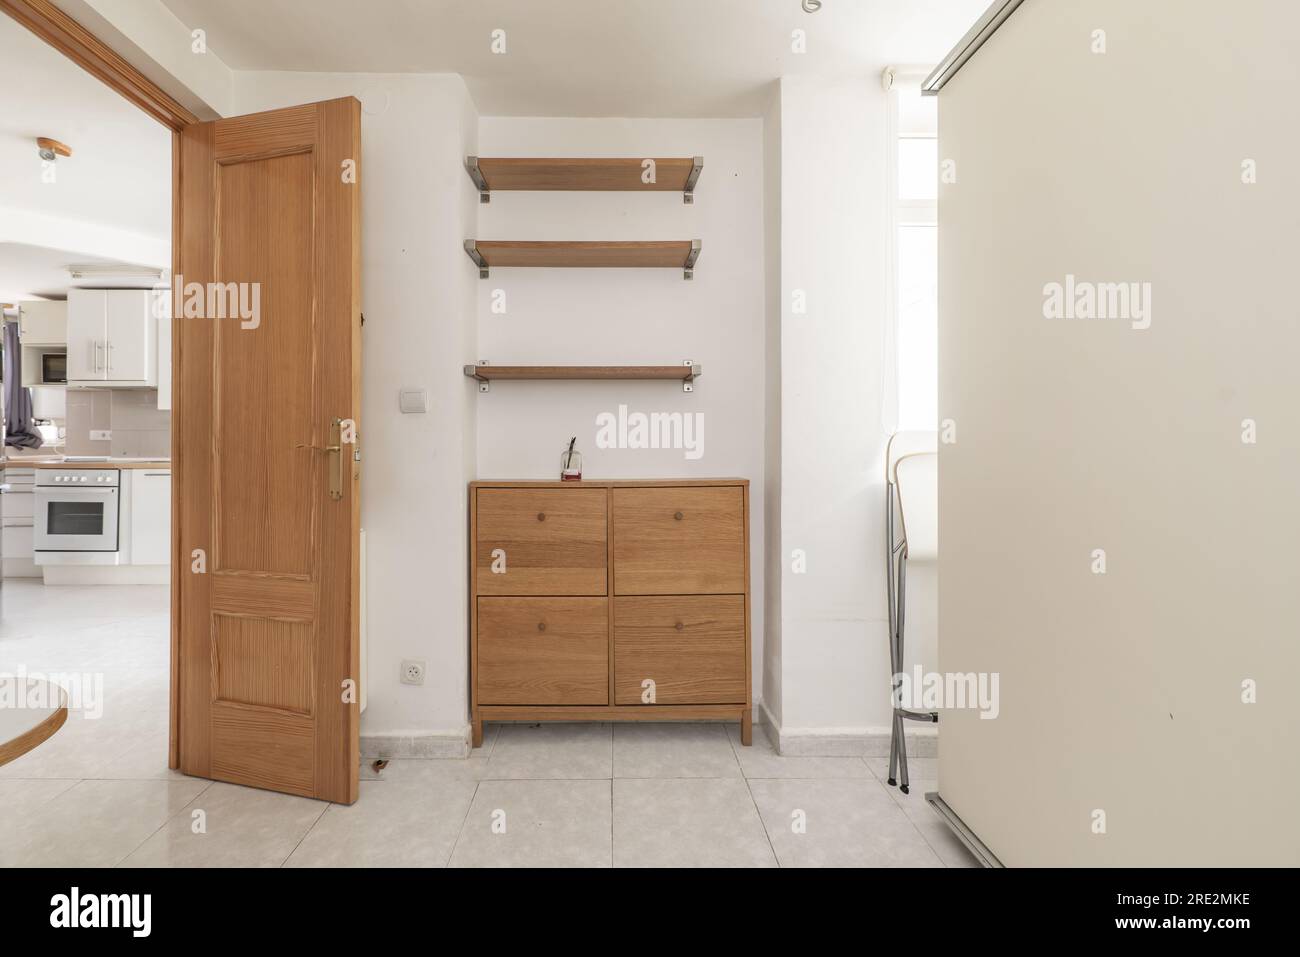 La camera da letto ha una cassettiera con quattro cassetti in legno e tre mensole a muro abbinate, un guardaroba bianco e pavimenti piastrellati Foto Stock